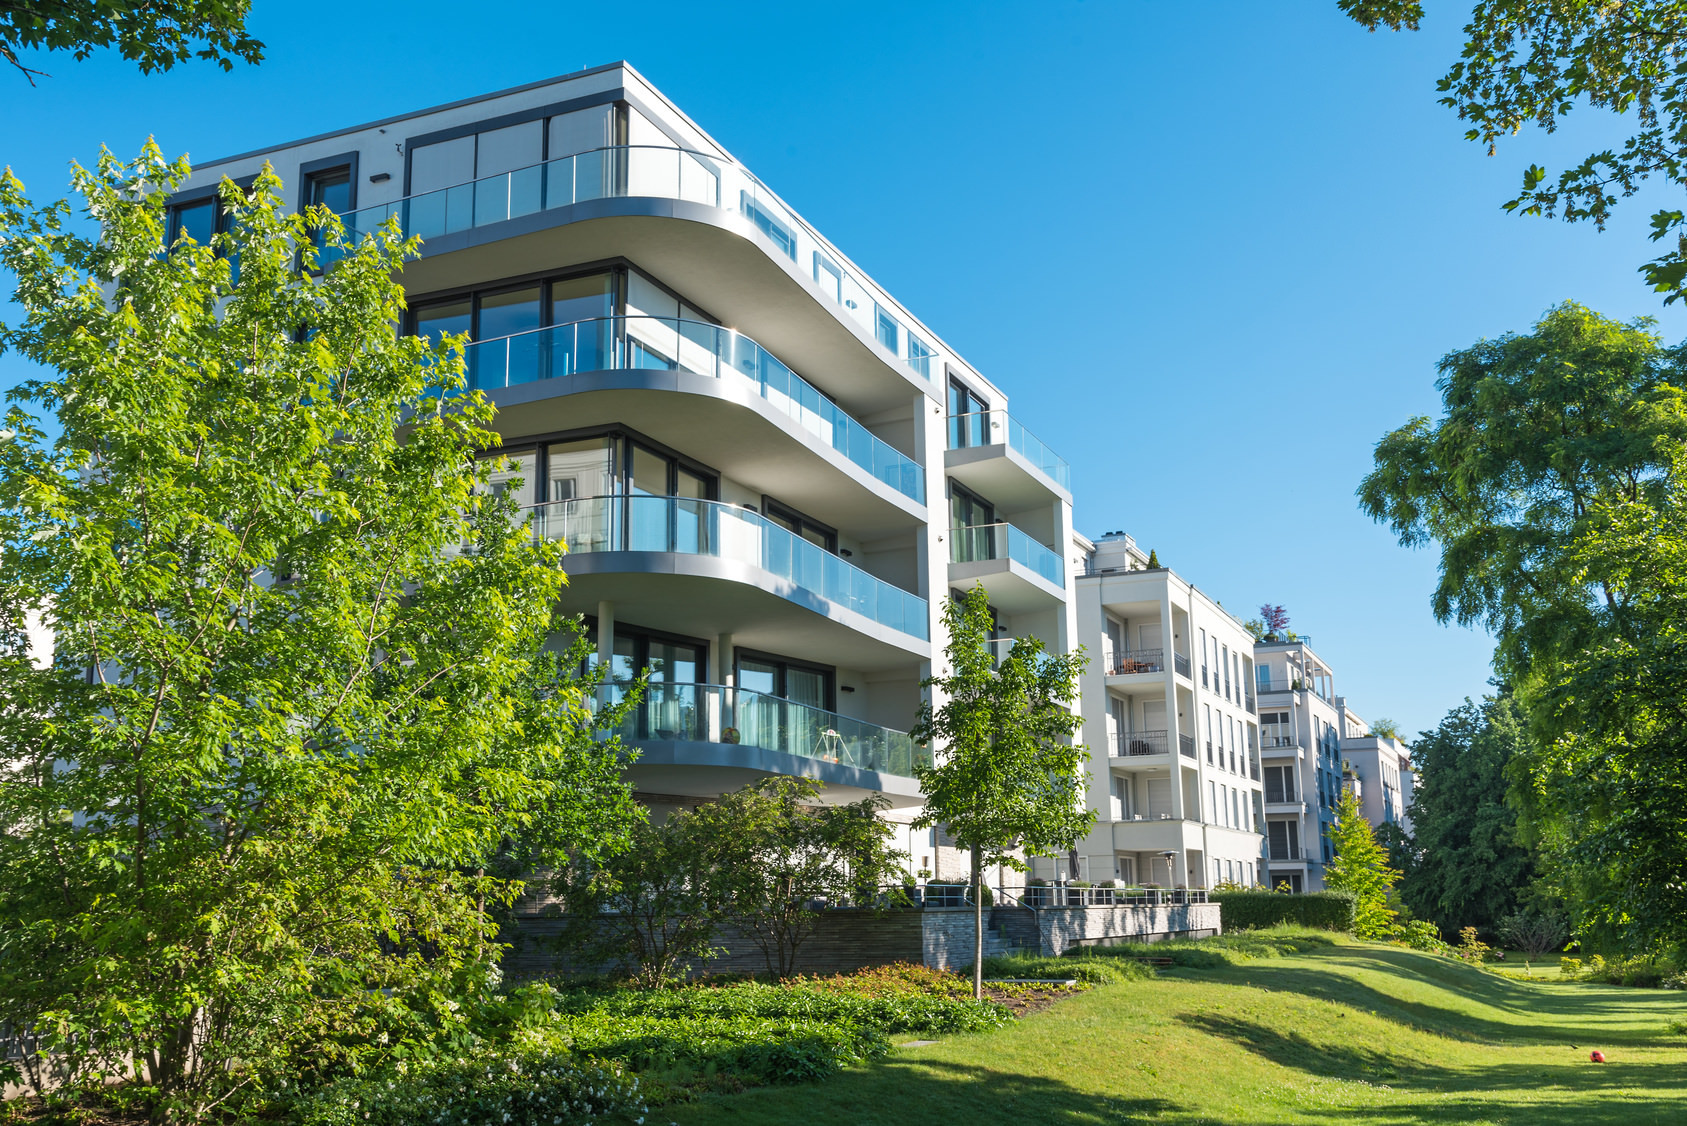 Immobiliengesuch für 70 Mio. Euro: Ankauf Mehrfamilienhäuser, Wohnportfolios, Wohnanlagen im Ruhrgebiet, Nordrhein-Westfalen (NRW)